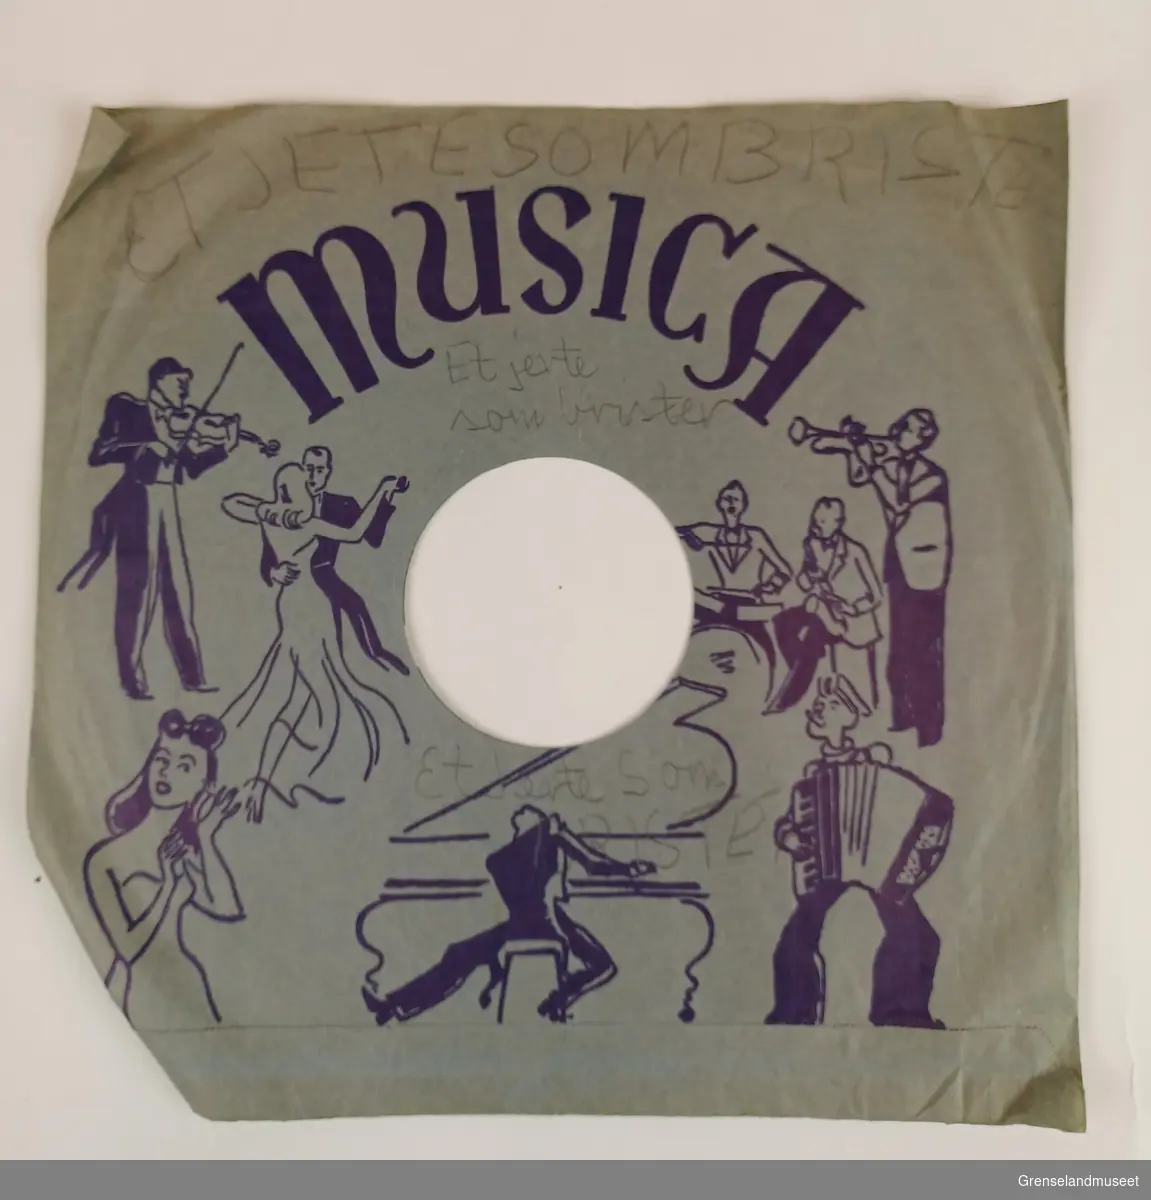 Plate: Magic Notes logoen som er en note.
Innpakning cover: motivet er "MusicA" med orkester, dansende par og en kvinne som lytter til musikken. 